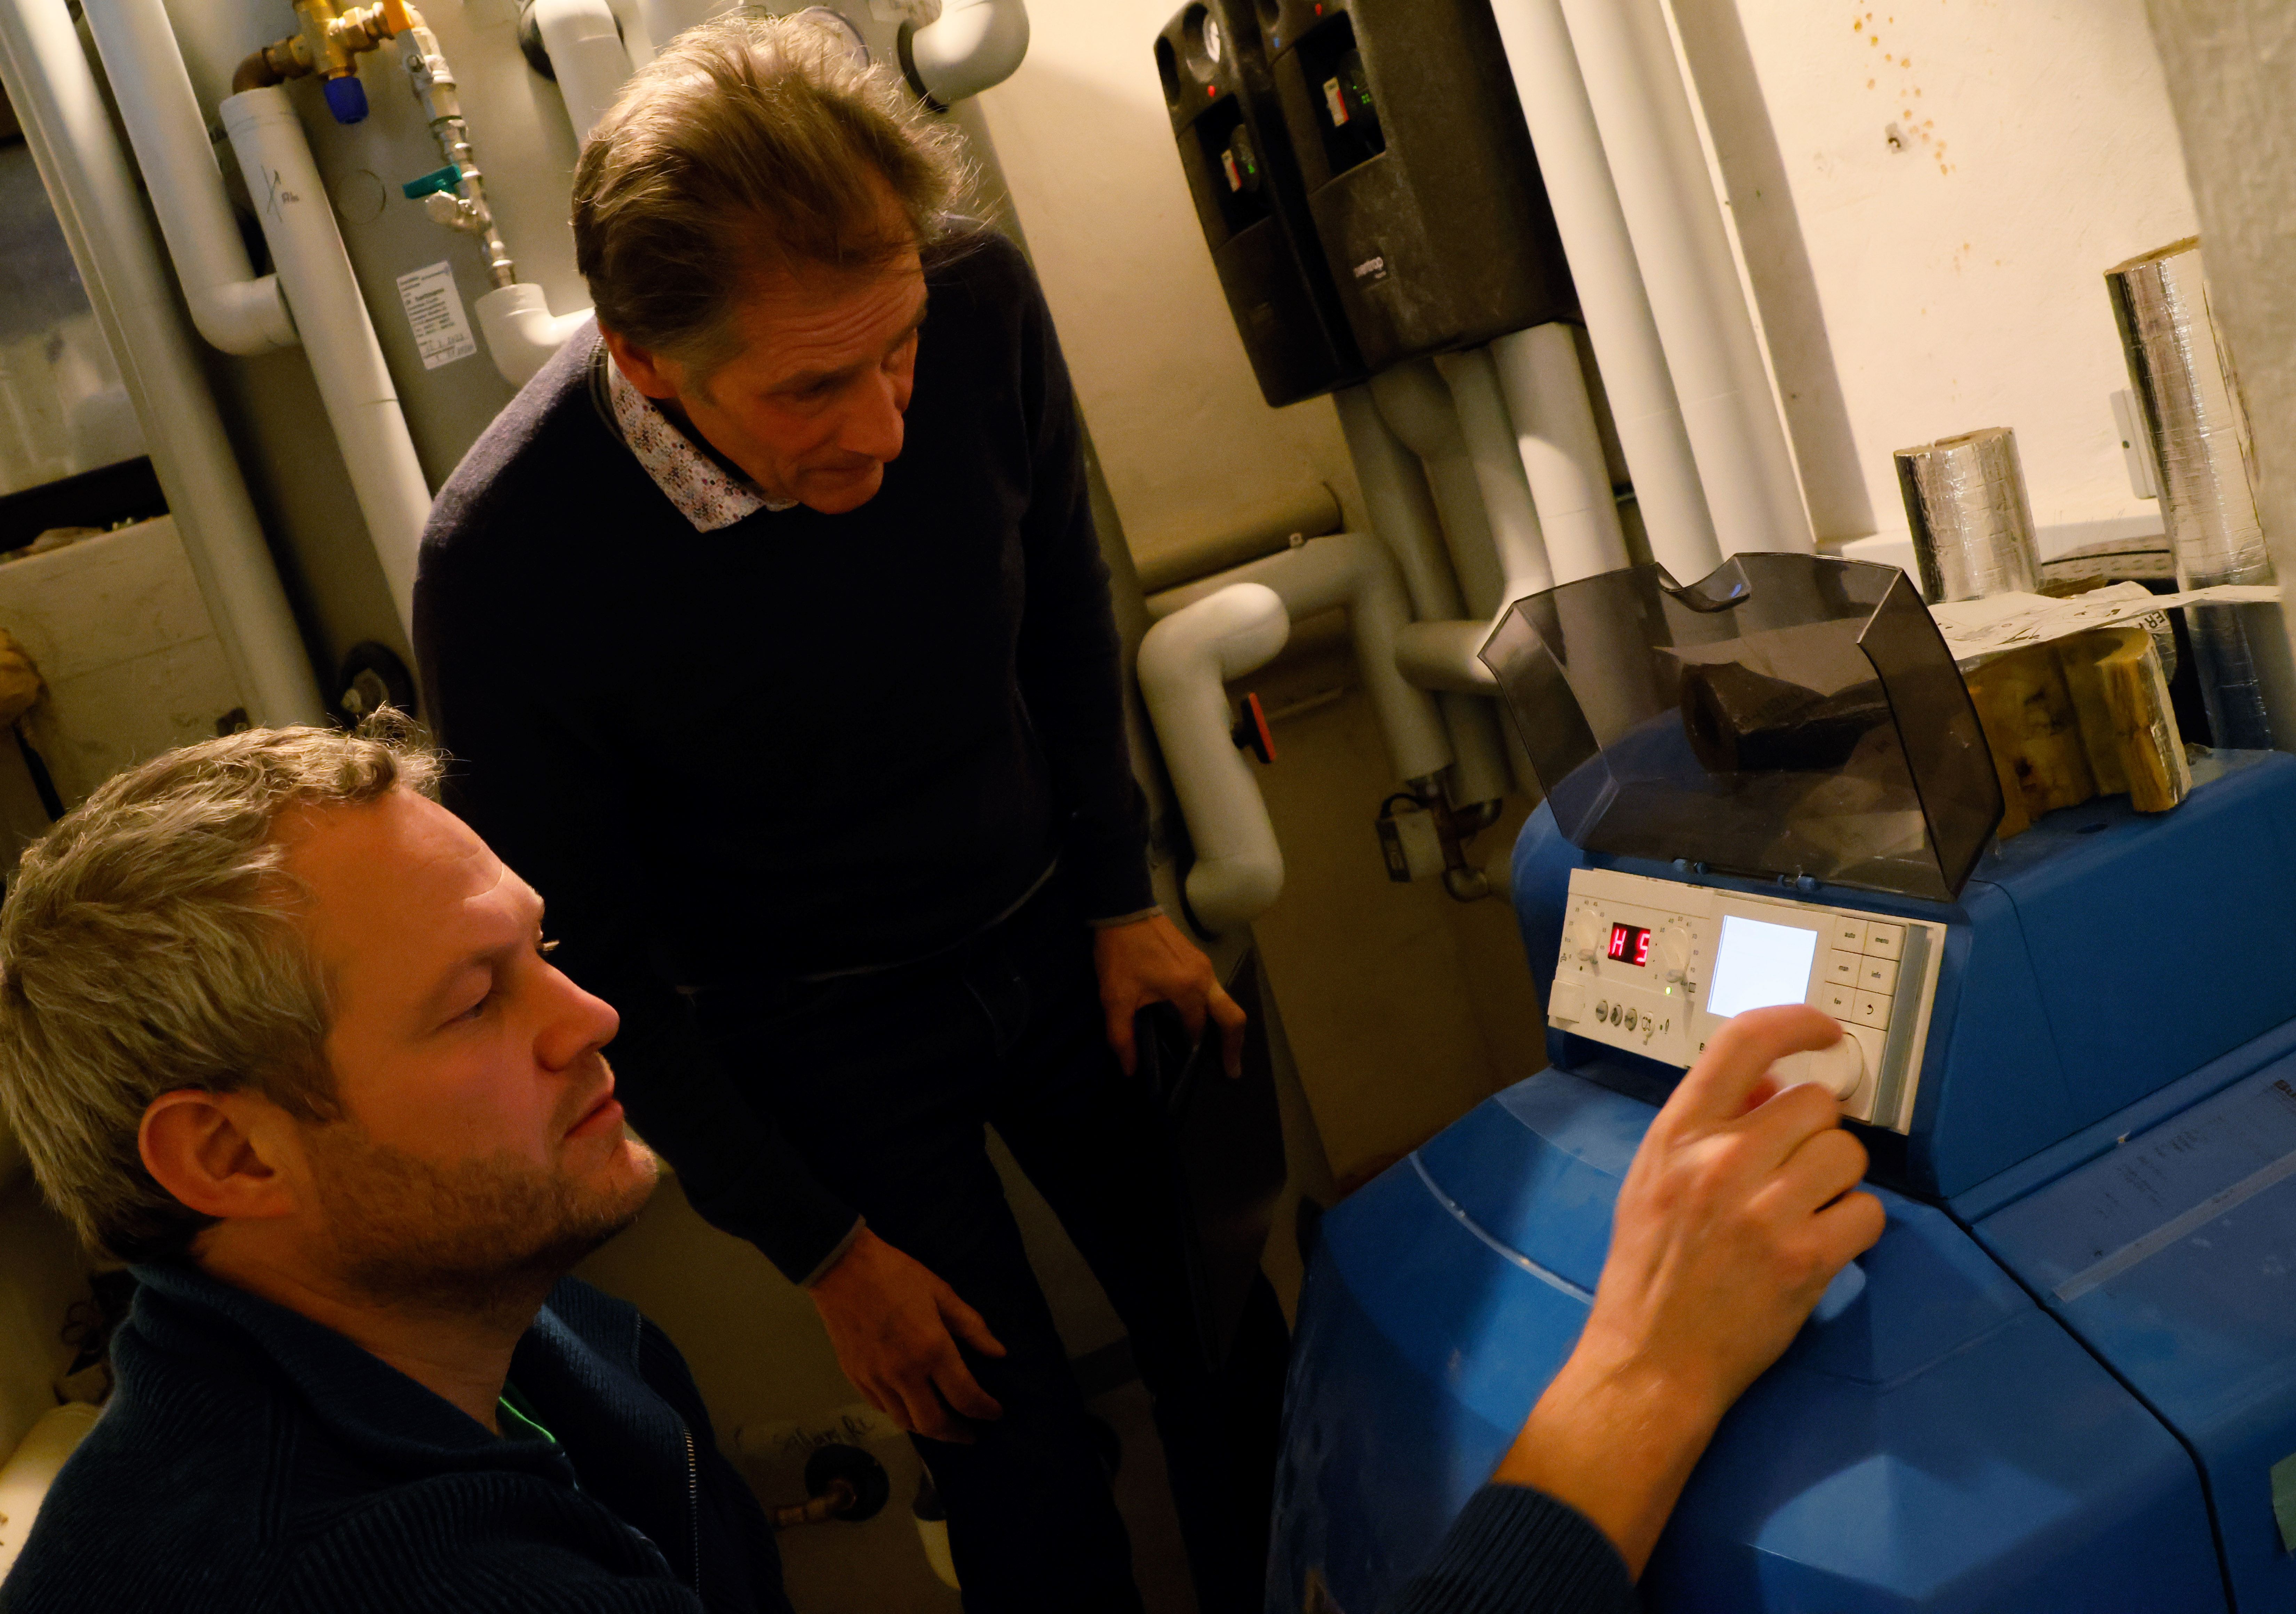 Das Bild zeigt Energieberater Peter Andreas-Tschiesche und Christoph Markert aus Wolfertschwenden im Heizungskeller. Die Beiden betrachten das Digitaldisplay einer Heizung